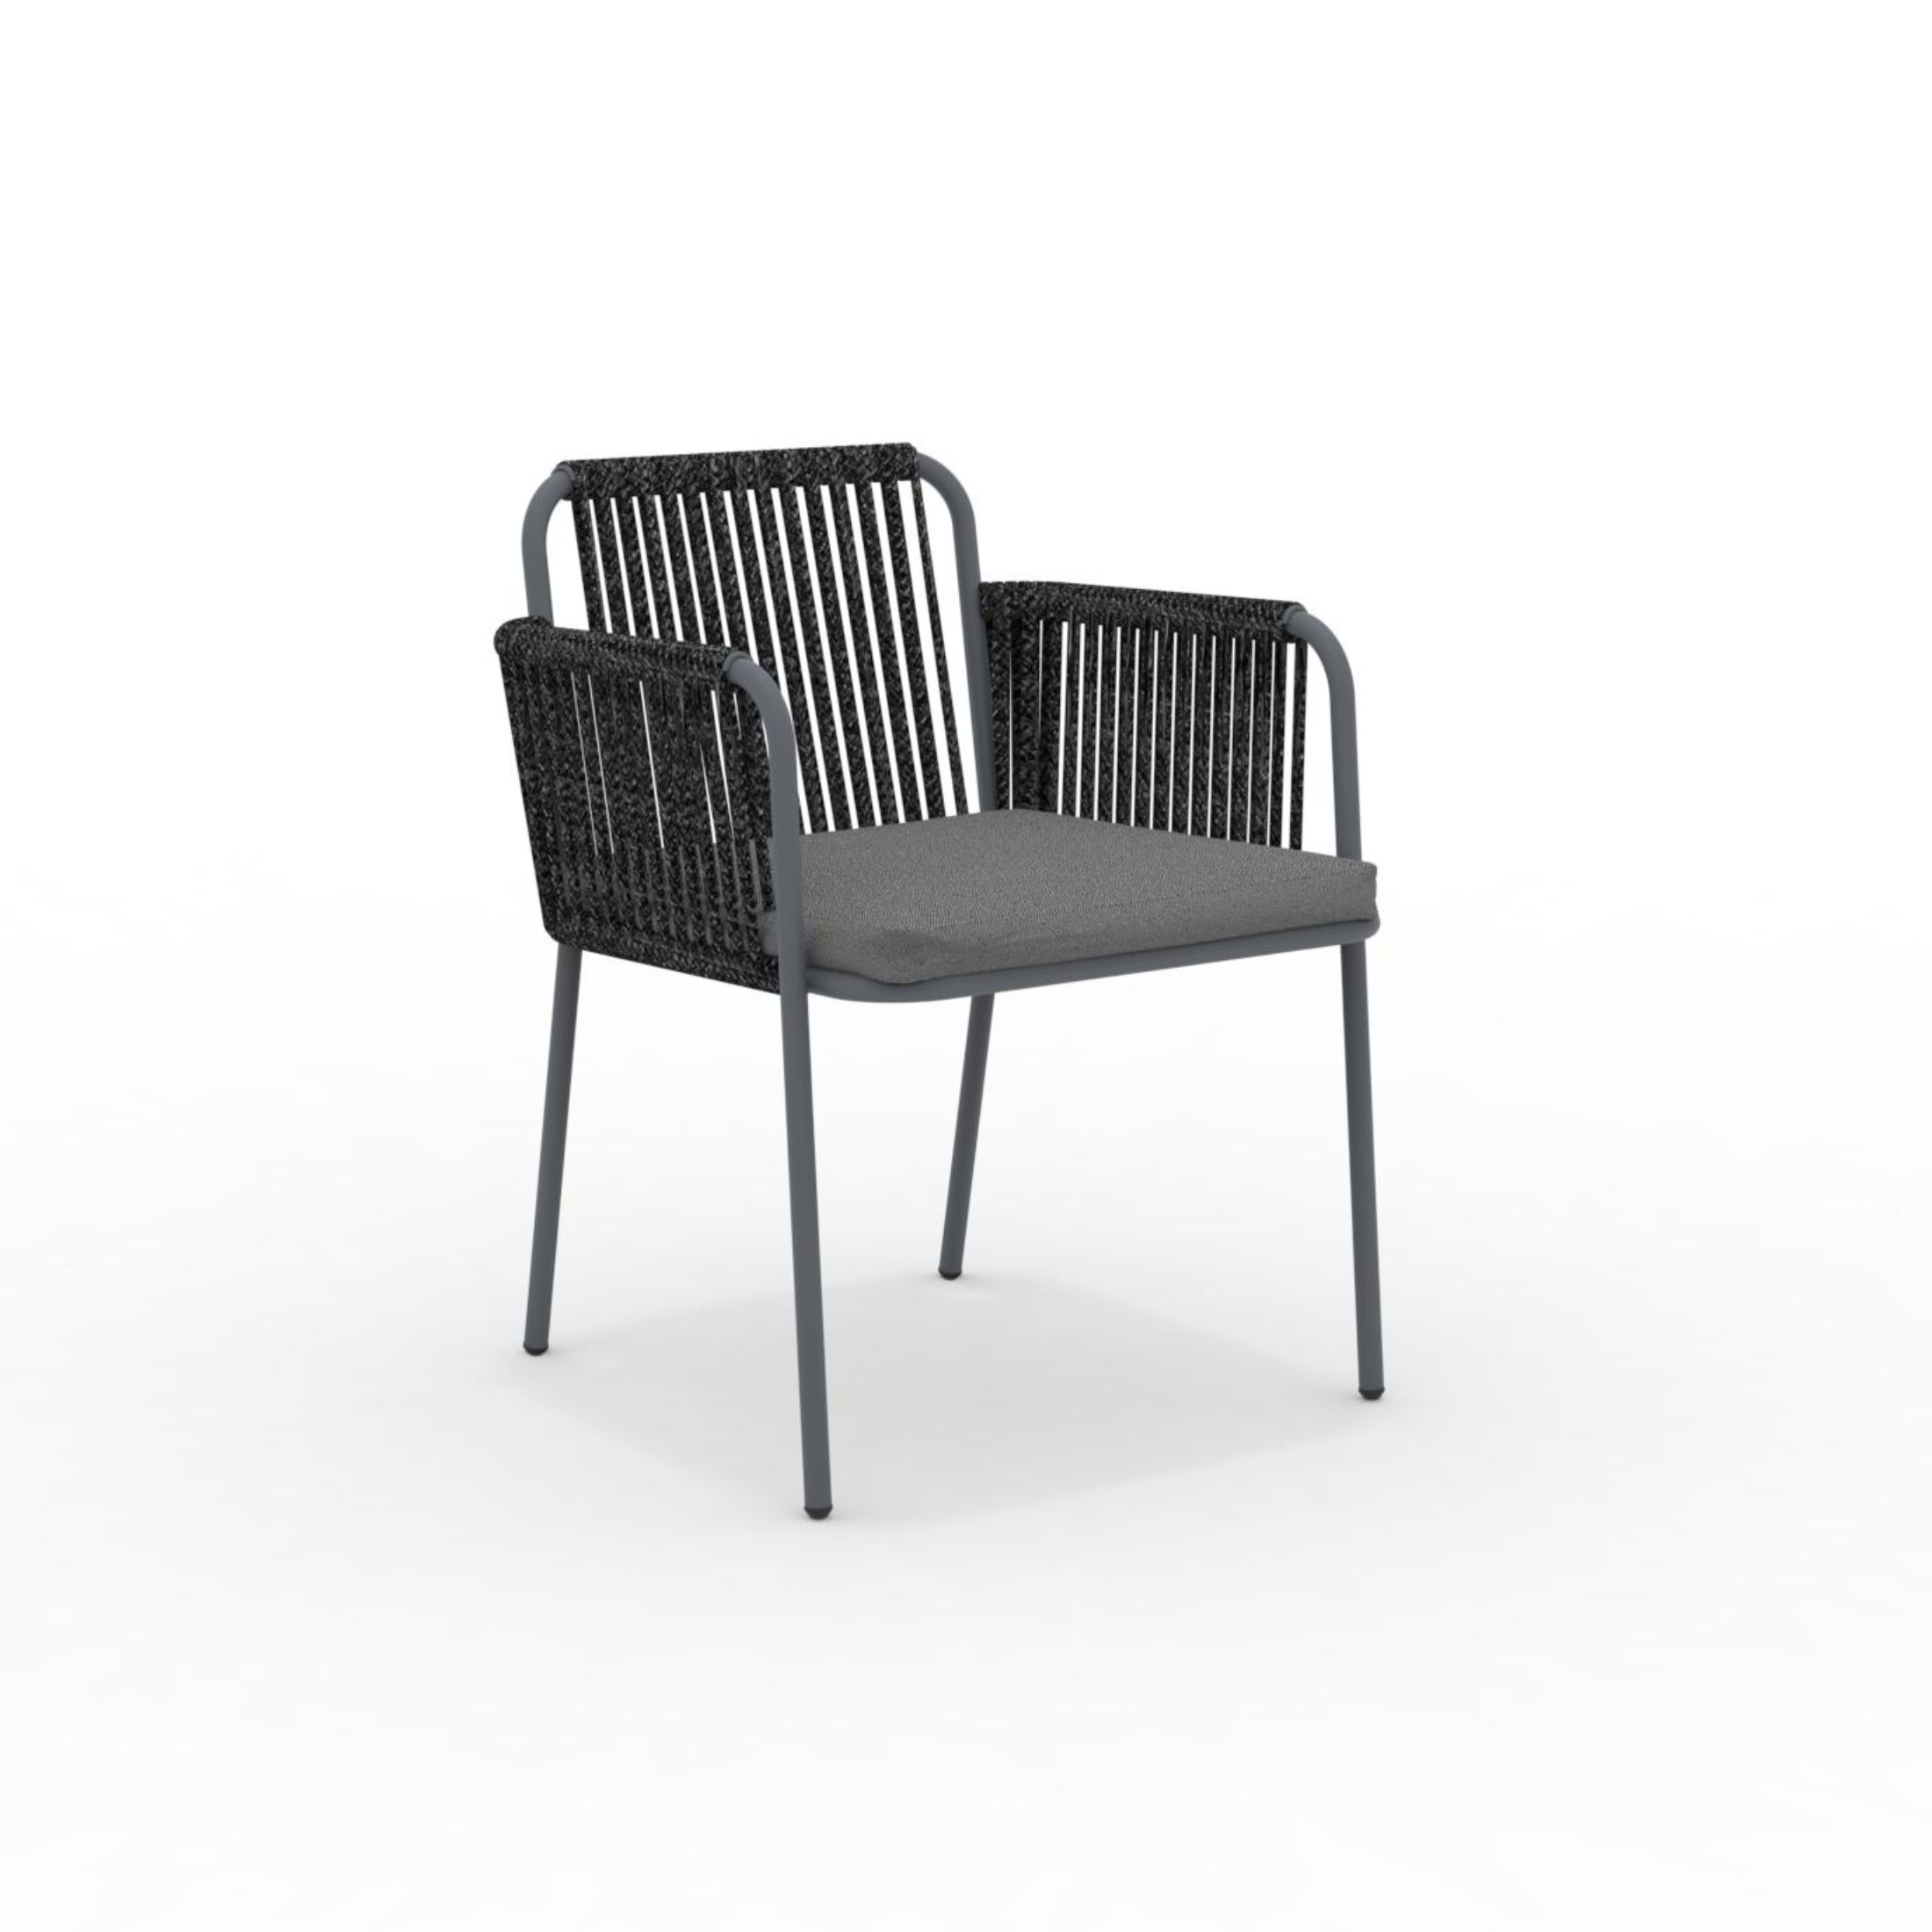 Conjunto sillón lounge con cojín y respaldo de cuerda "Key West" apilable 62x66 cm 85h